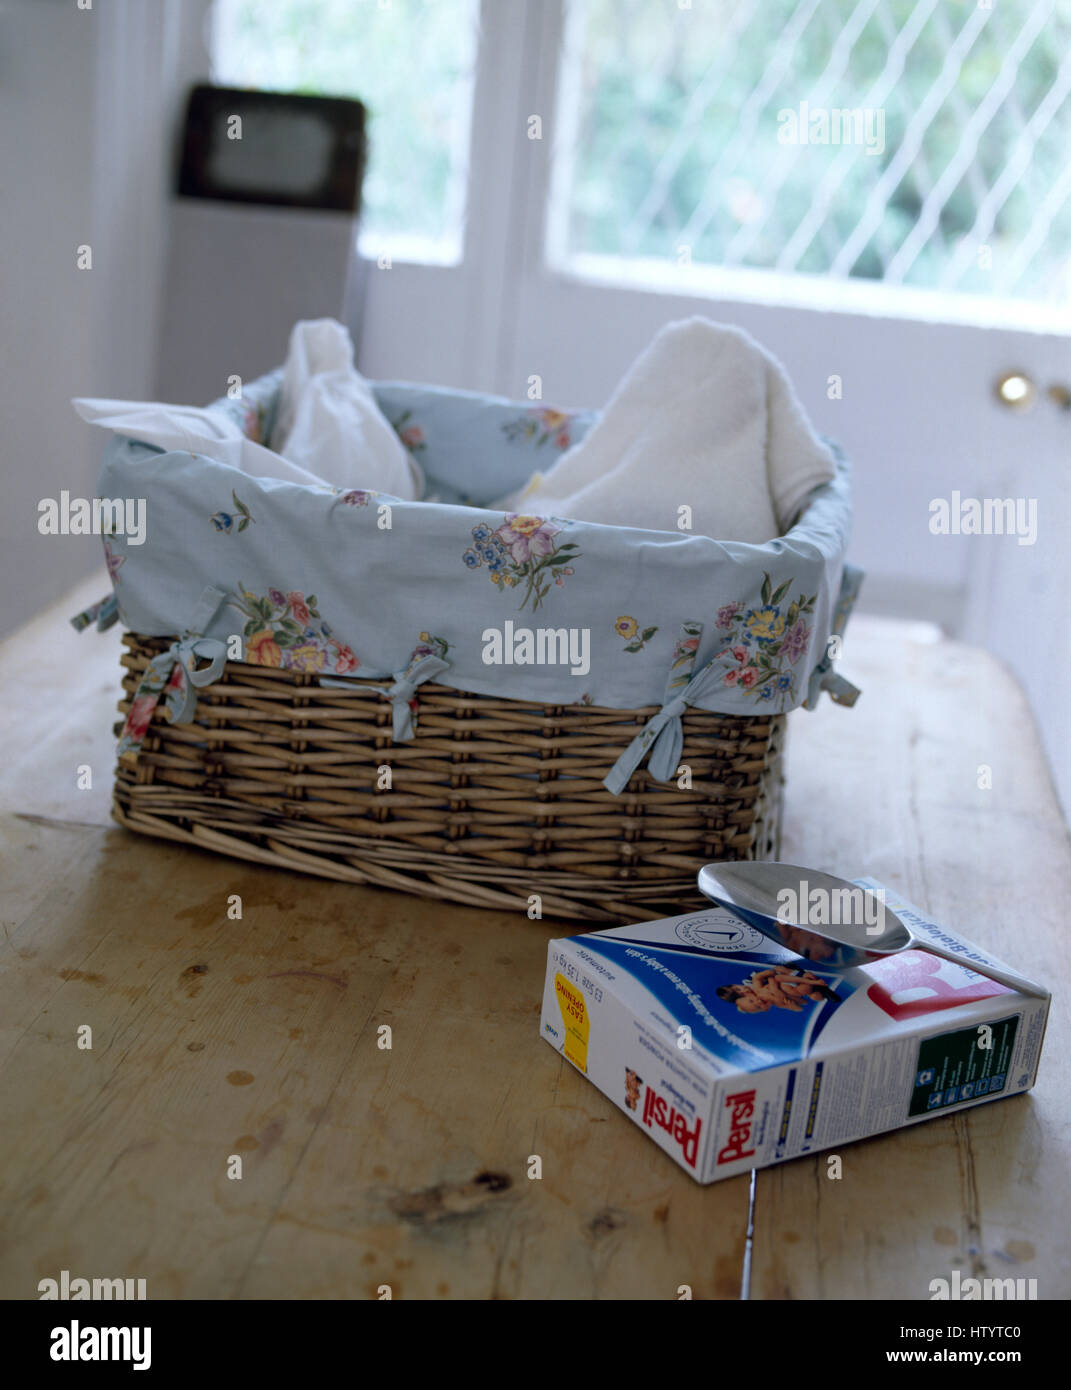 Paquet de lessive en poudre Persil sur table avec panier à linge doublé coton floral Banque D'Images